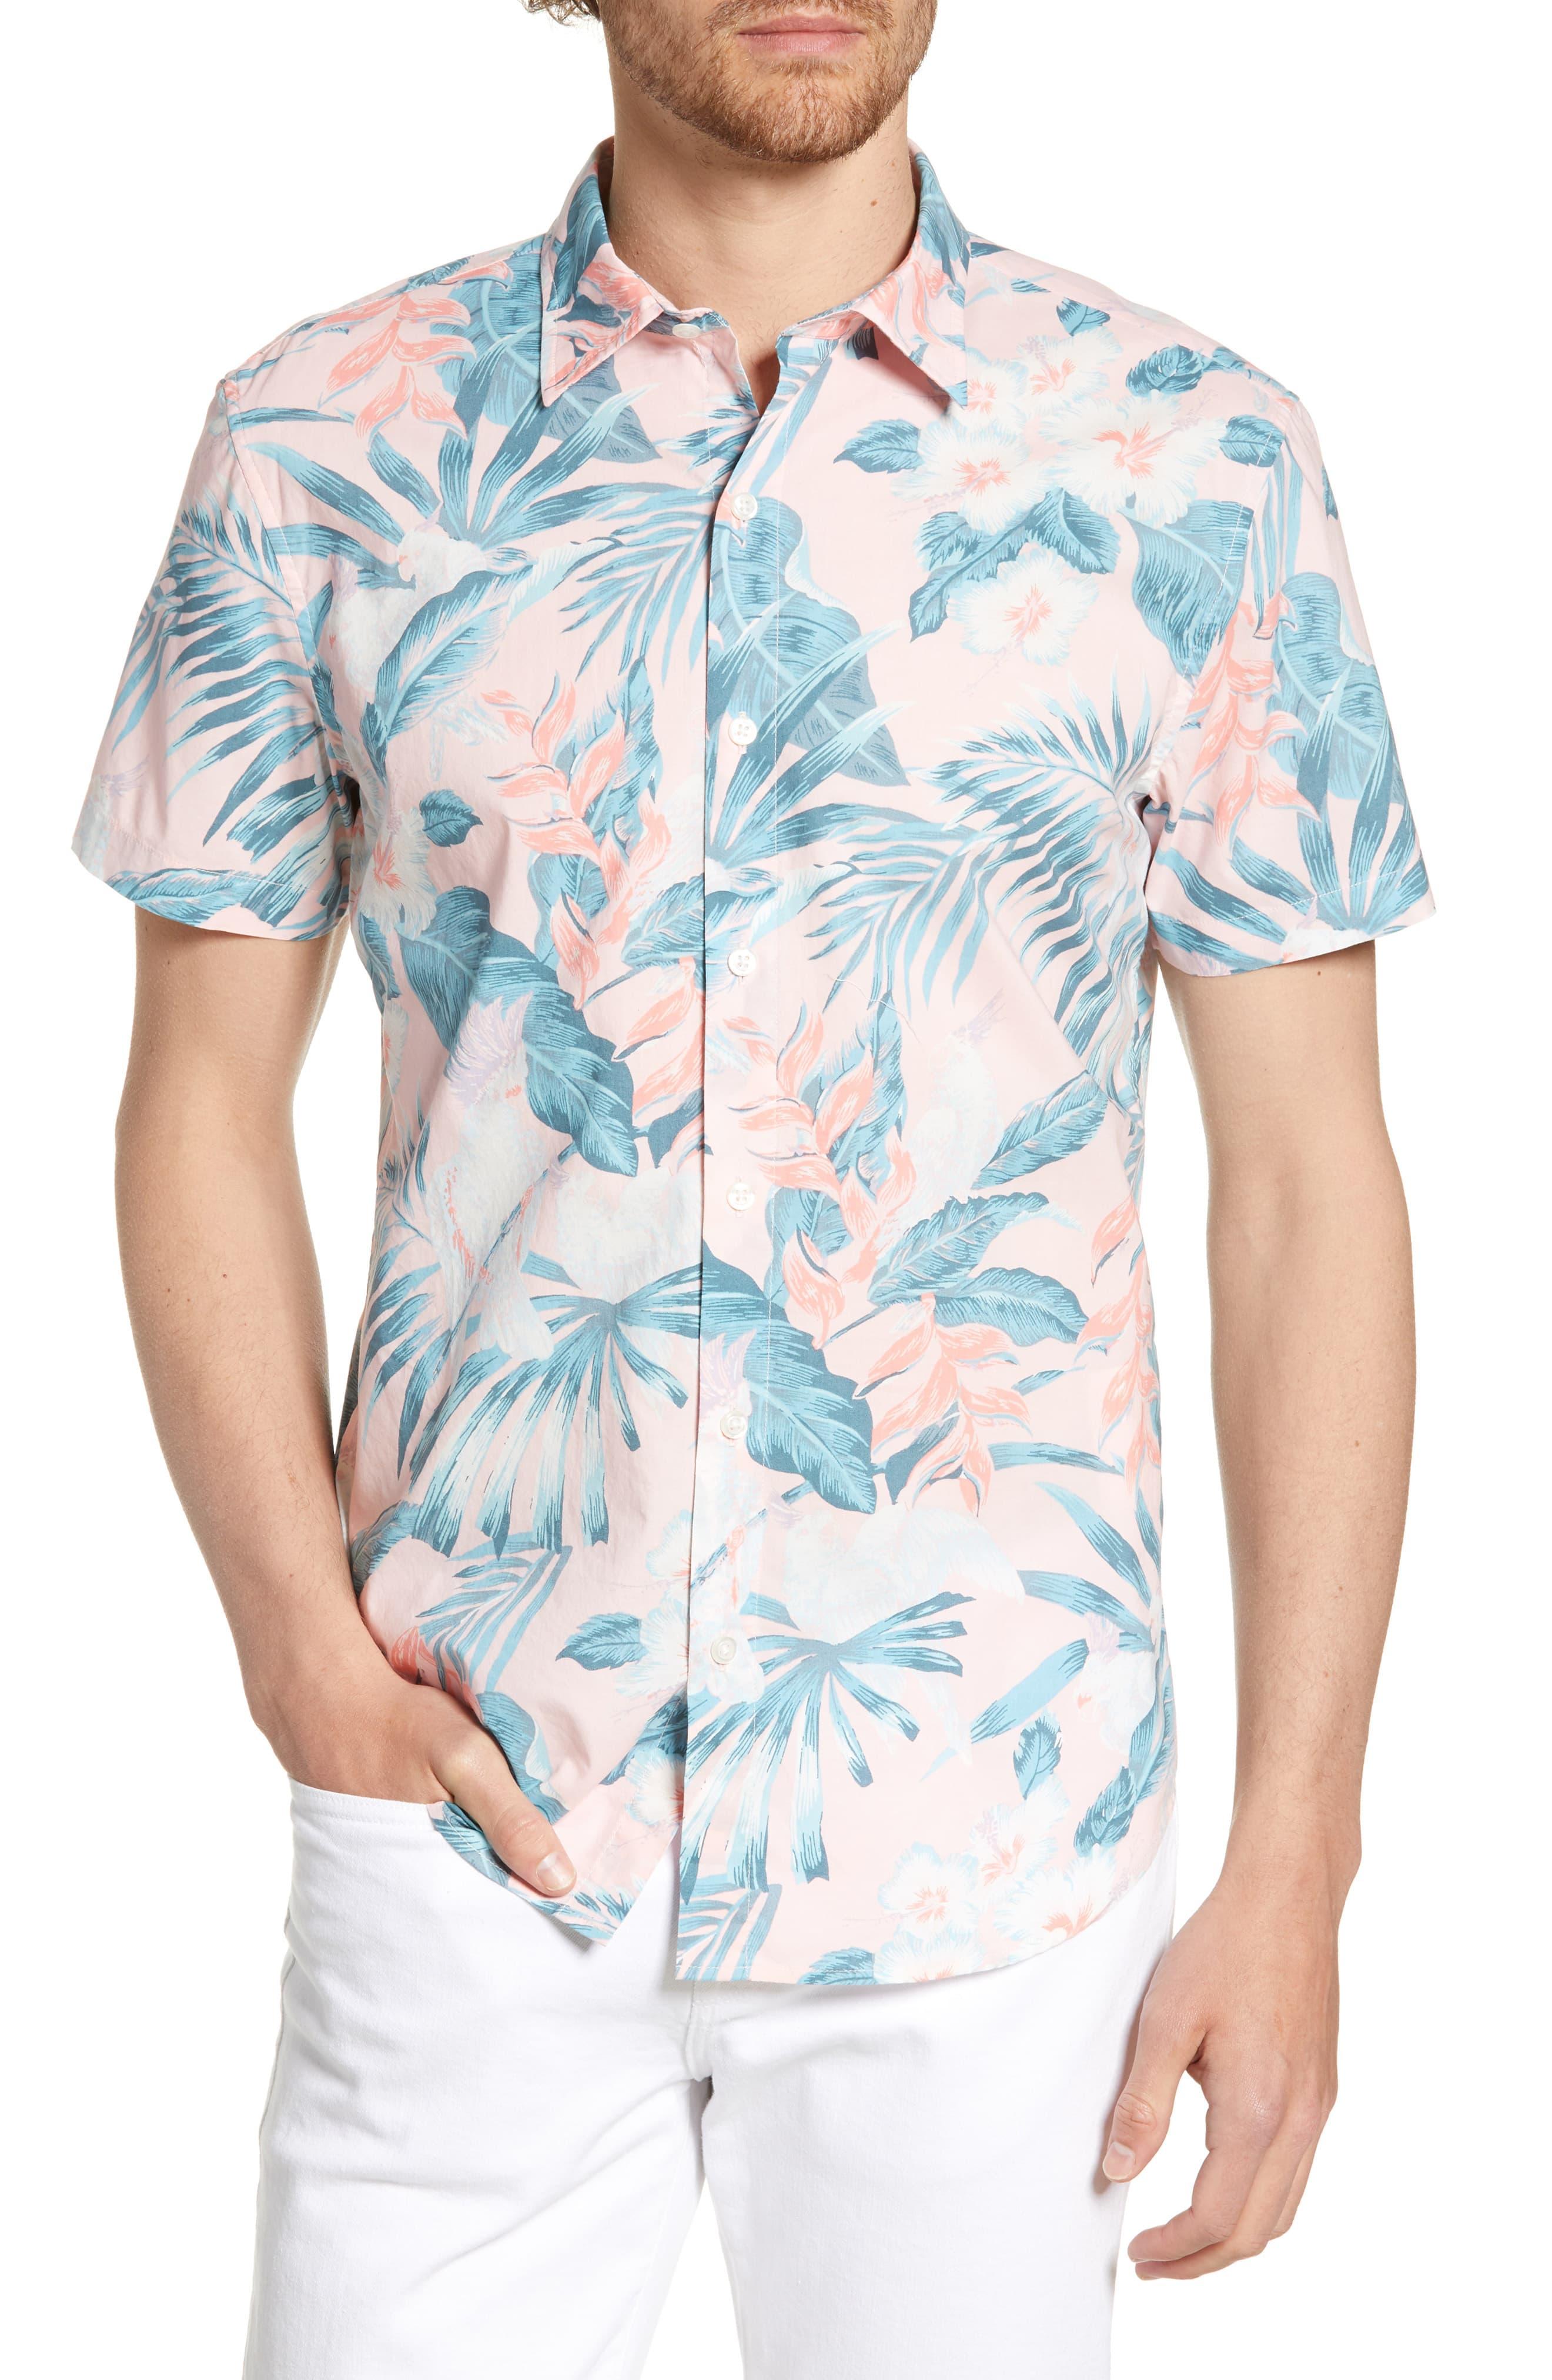 Bonobos Riviera Slim Fit Tropical Print Shirt in Blue for Men - Lyst